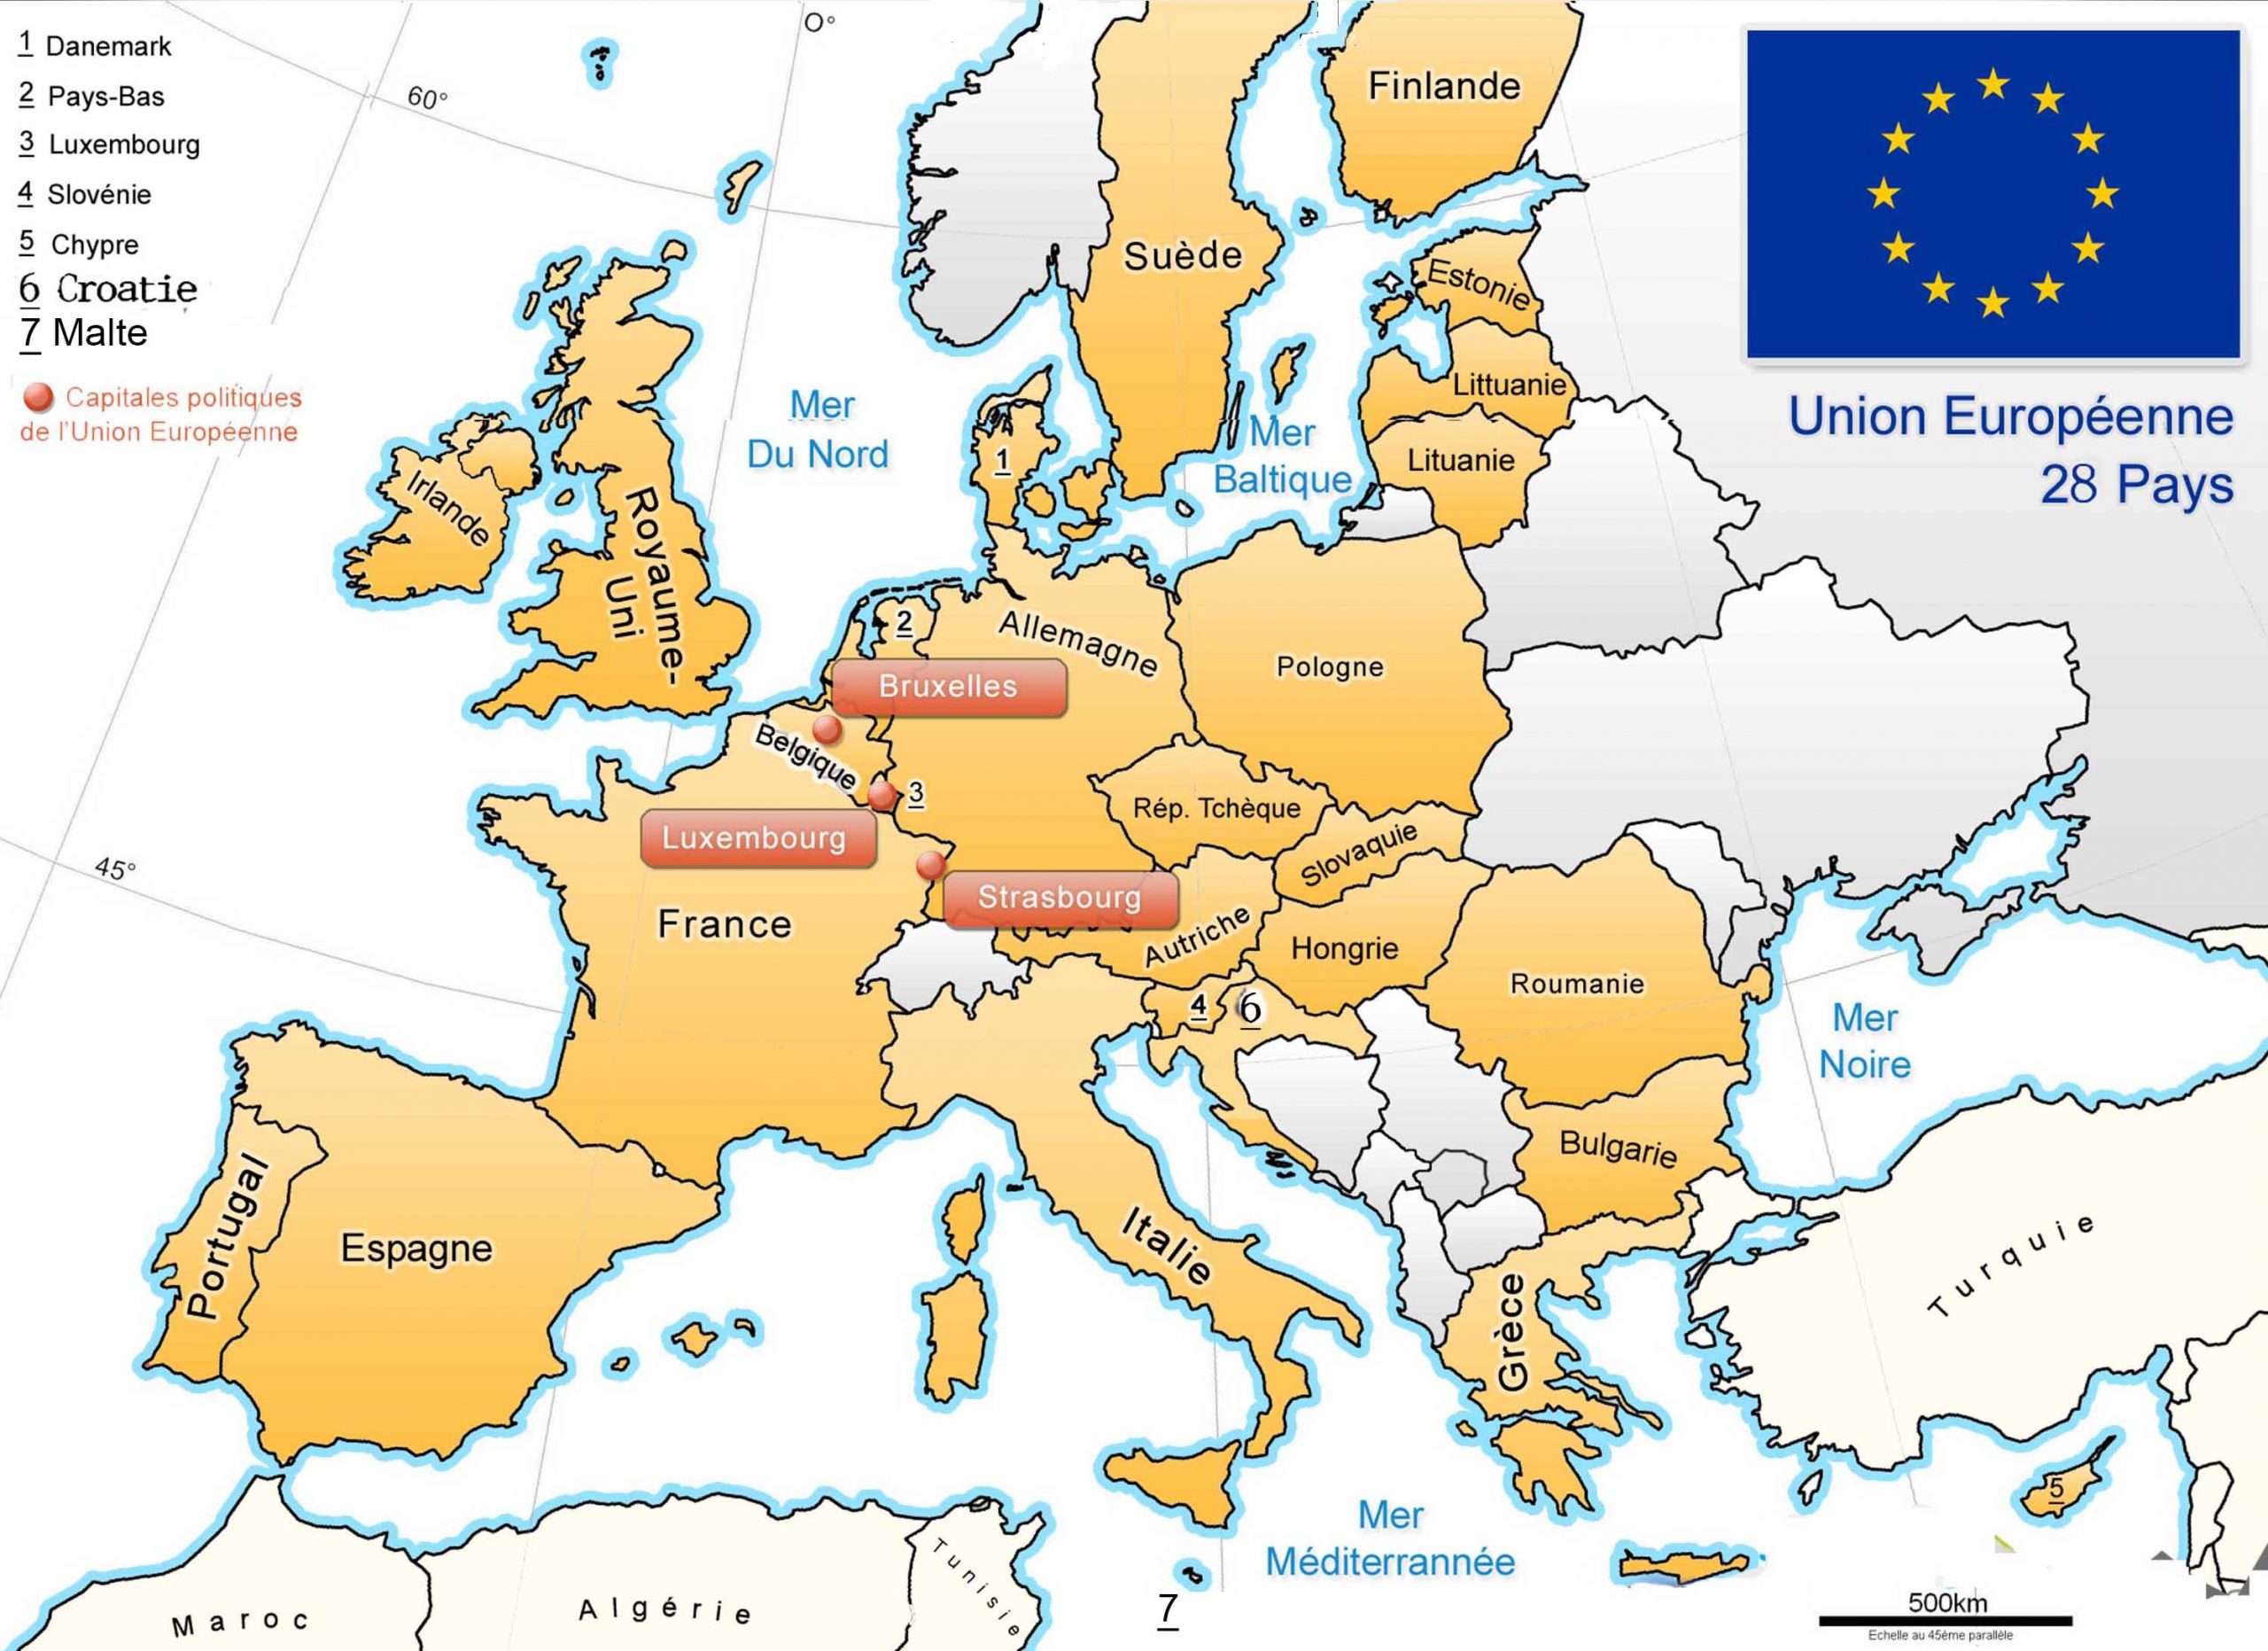 Apprendre À Placer Les Pays De L' Union Européenne - Le Blog dedans Carte De L Europe Avec Capitale